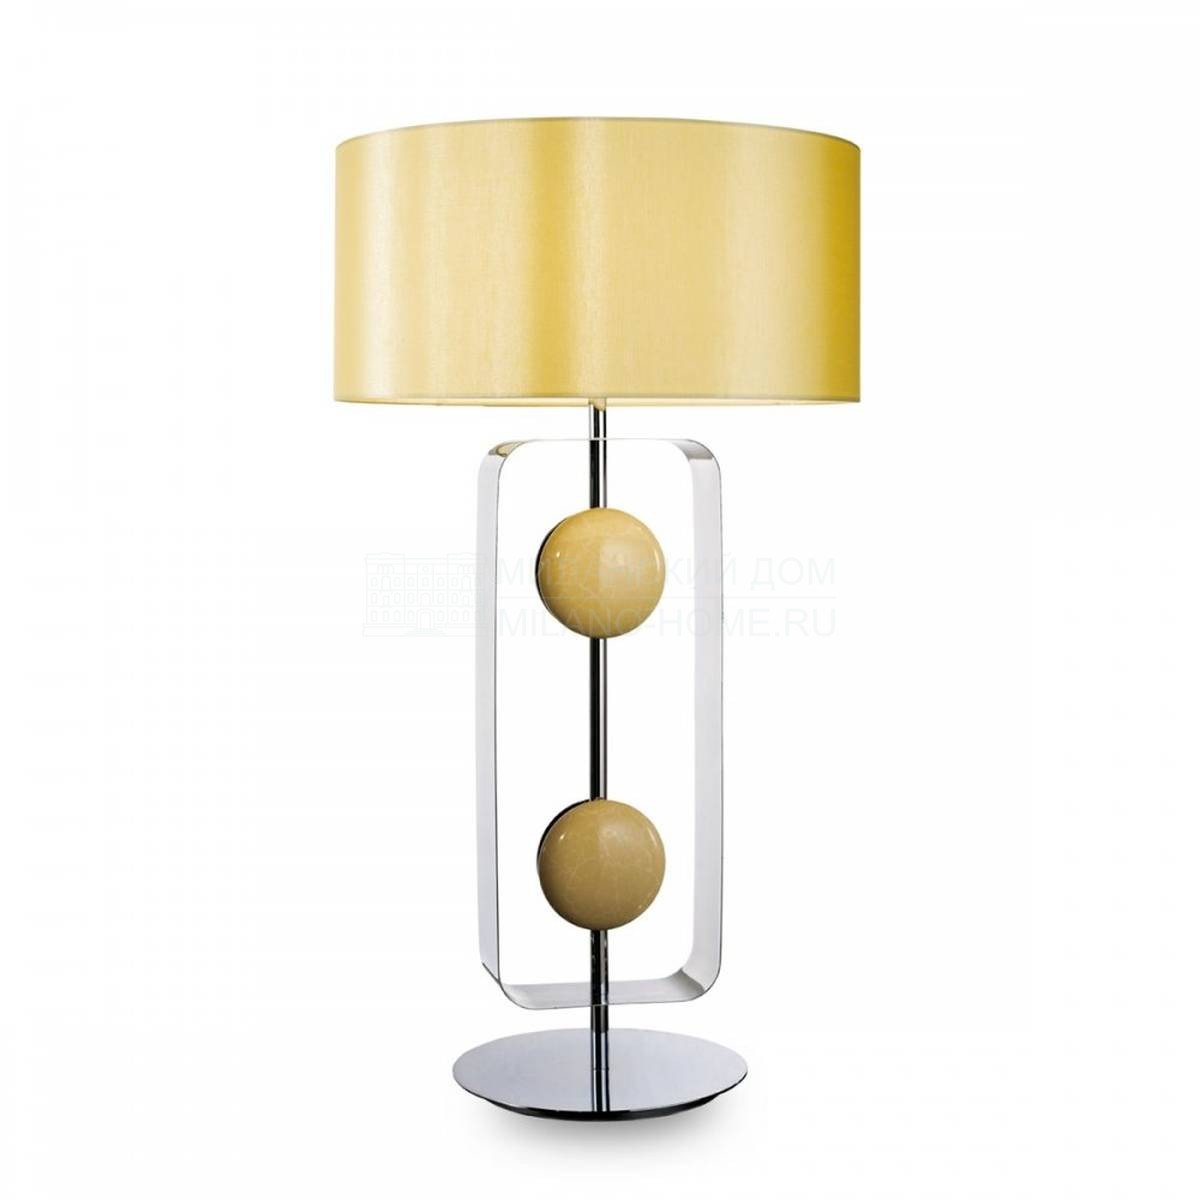 Настольная лампа Target table lamp из Италии фабрики MARIONI